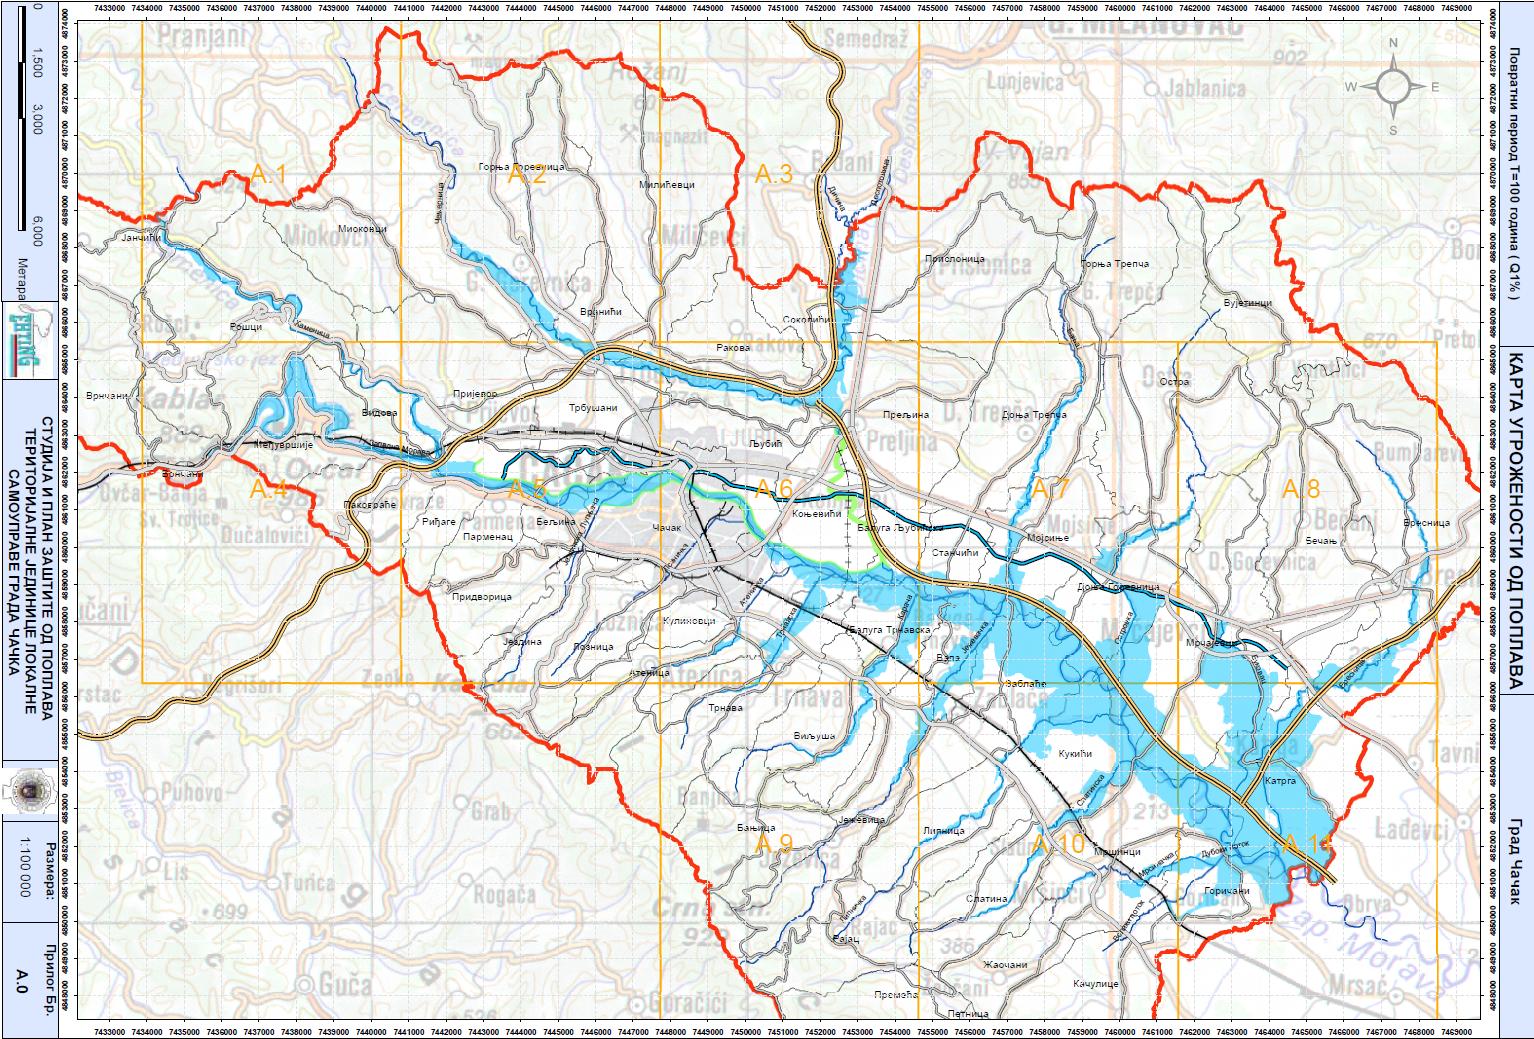 Snímek mapy povodňového